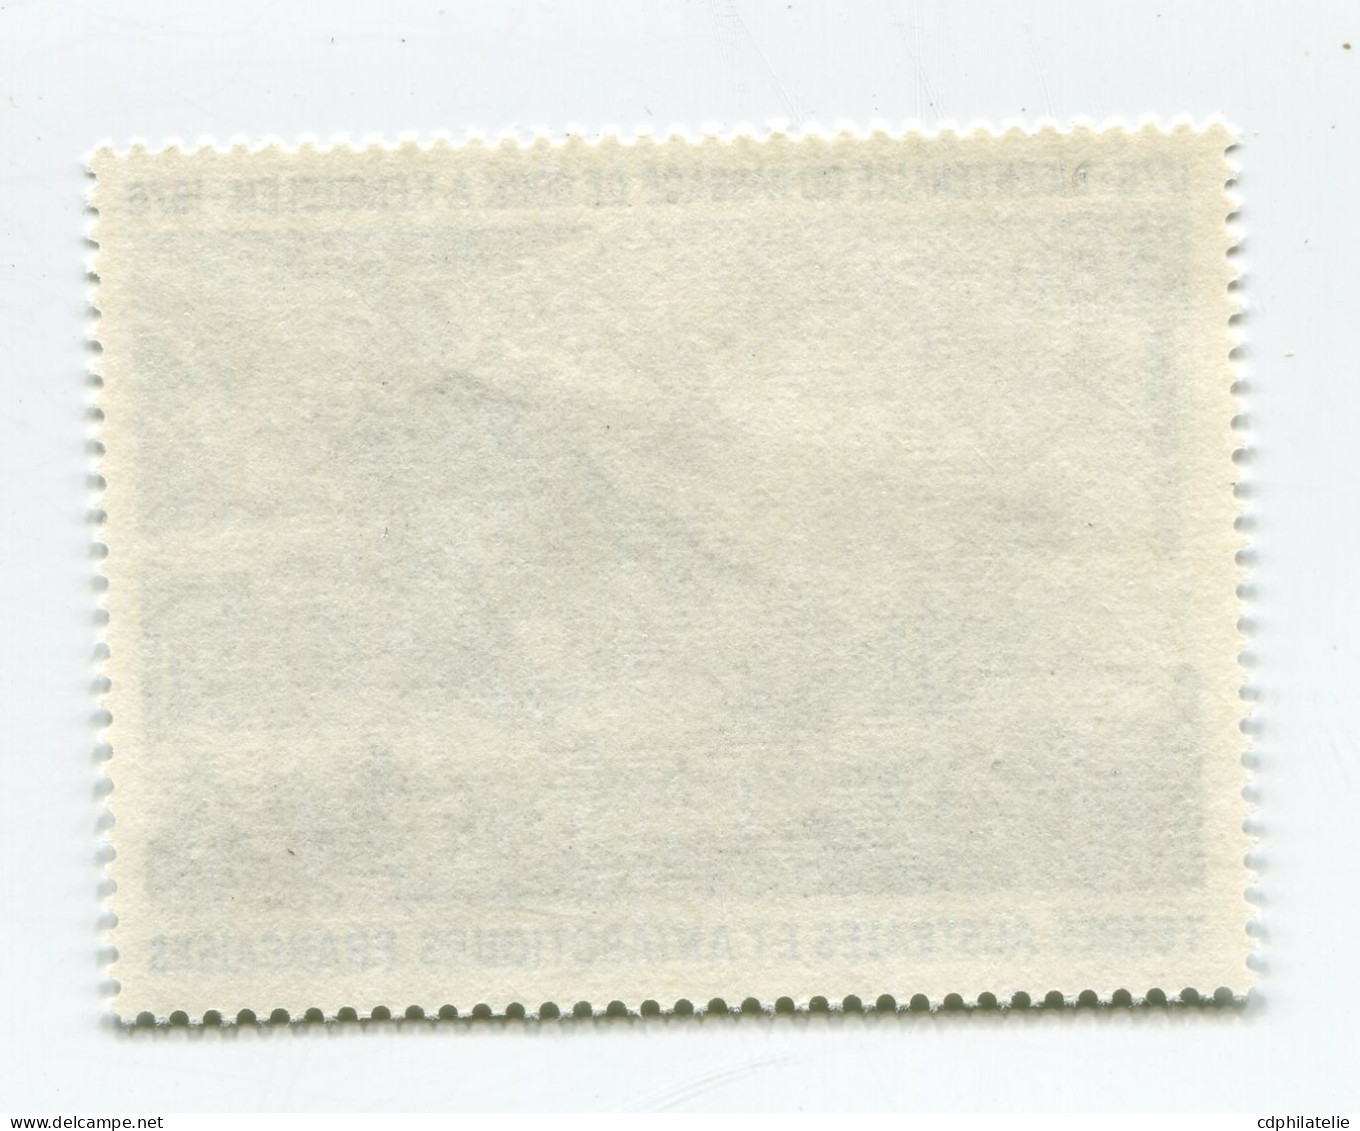 T. A.A. F. PA 47 ** BICENTENAIRE DU PASSAGE DE COOK A KERGUELEN - Unused Stamps